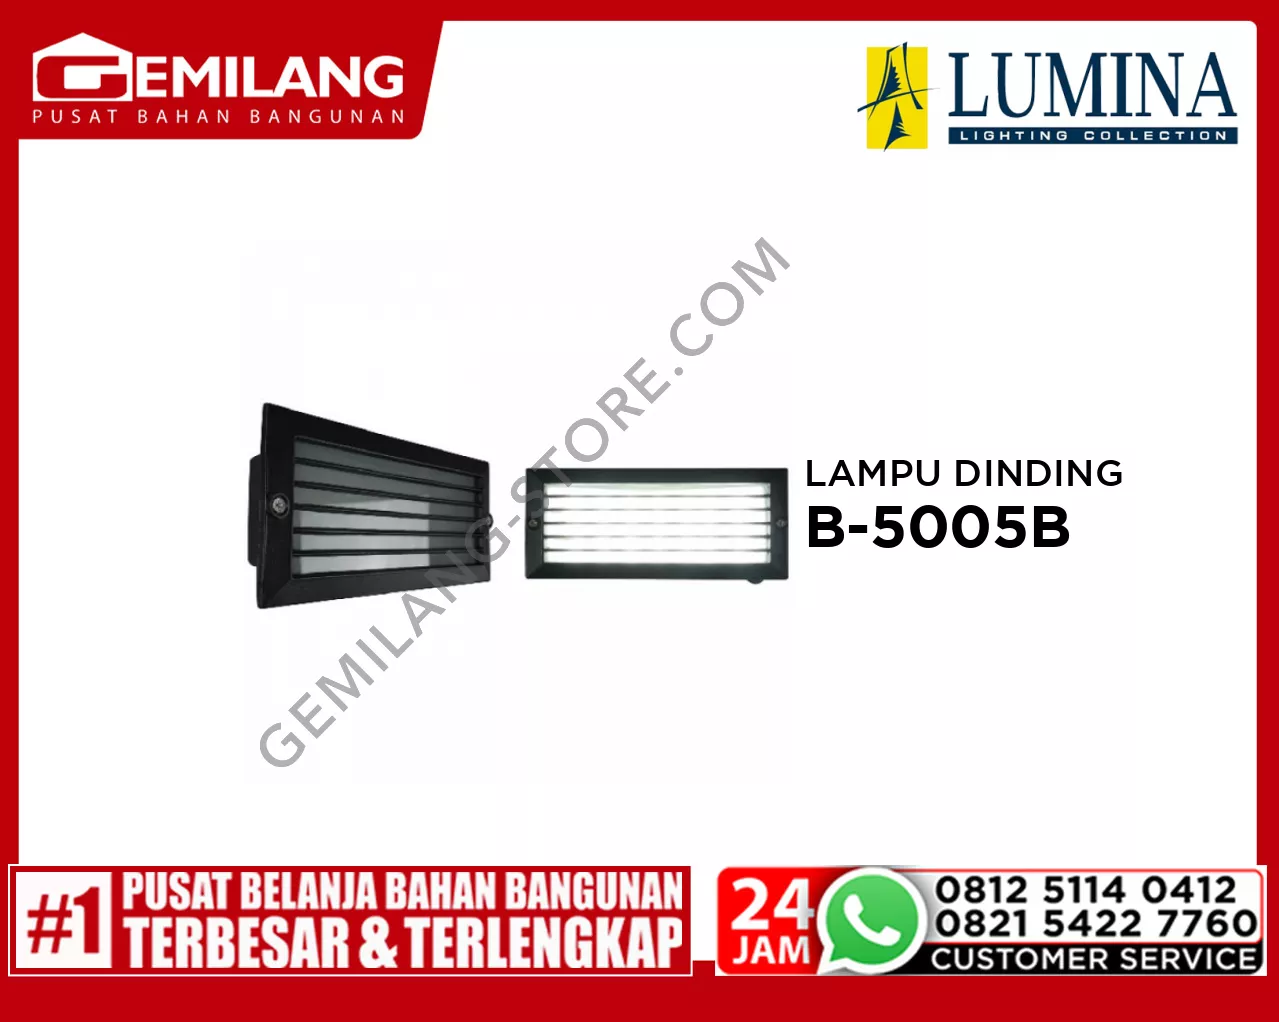 LAMPU DINDING B-5005B LED BK